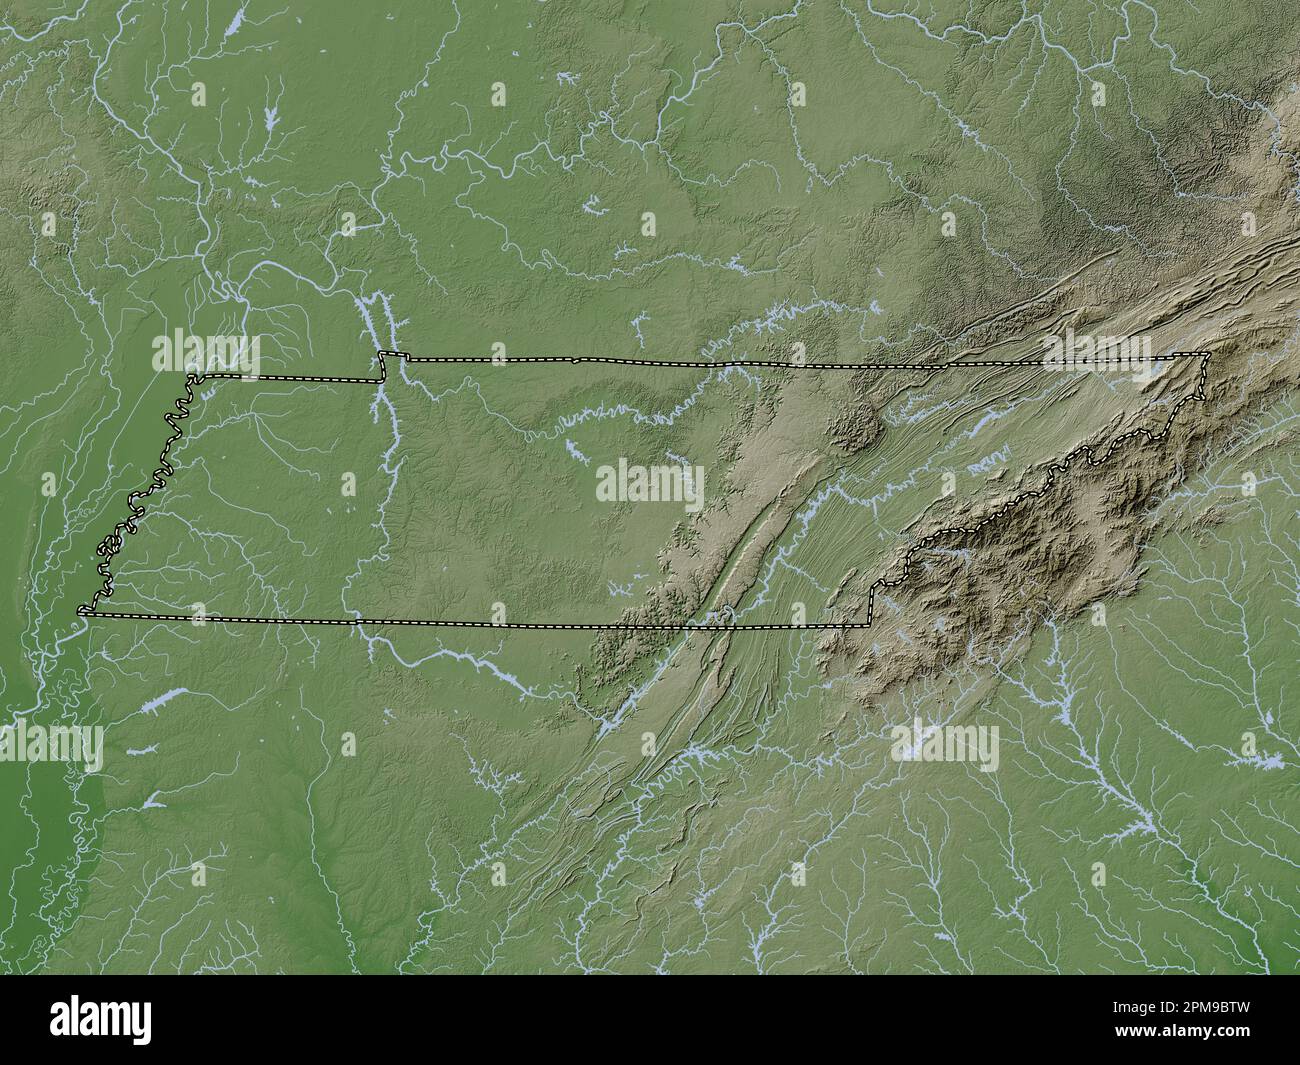 Tennessee, État des États-Unis d'Amérique. Carte d'altitude colorée en style wiki avec lacs et rivières Banque D'Images